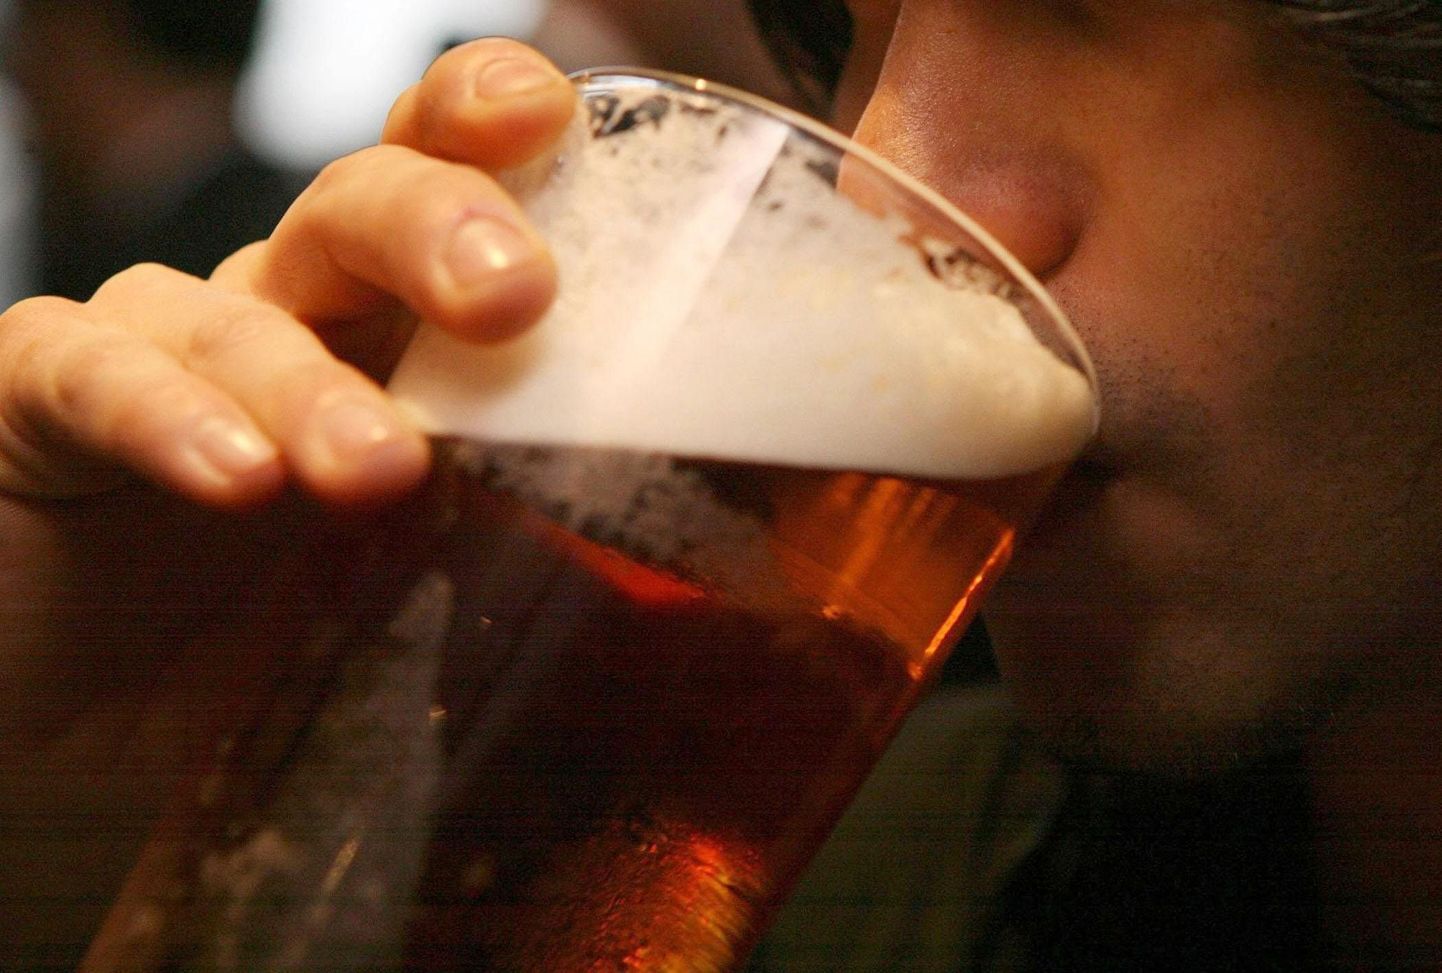 Õlu on konkurentsitult brittide lemmikjook, just kesvamärjuke annab 60 protsenti Ühendkuningriigi alkoholimüügist. Majanduskriis on alkoholitarbimist vähendanud ning mullu vähenes alkoholi müük saareriigis viimase 60 aasta kiireimas tempos.